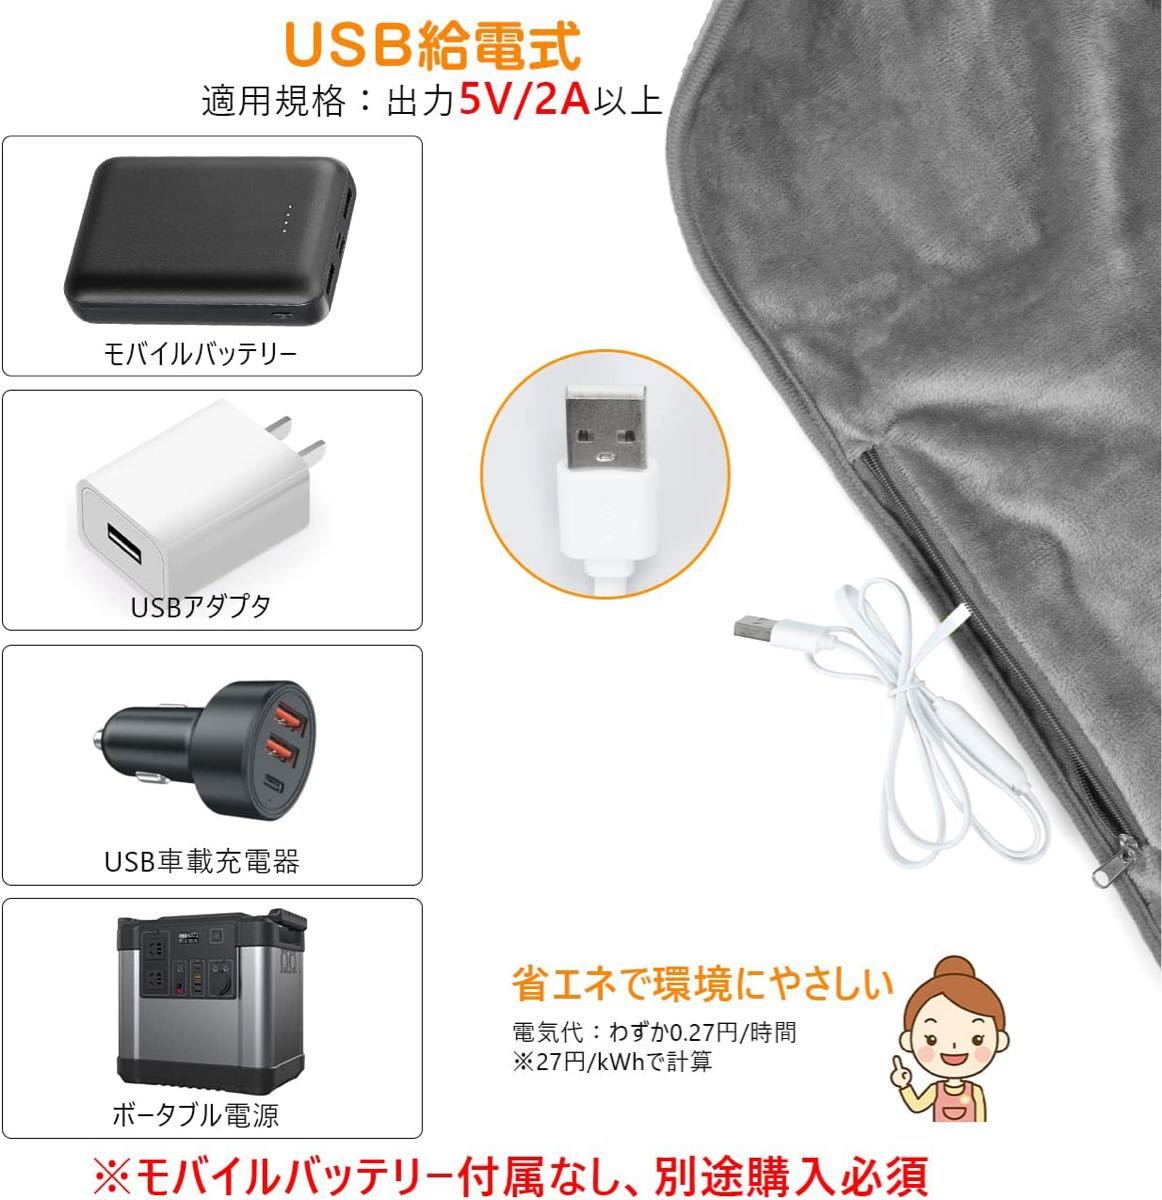 寝袋 電熱マットシュラフ発熱パッド ホットマット 日本製ヒーター10秒速暖USB給電 3段階温度調整 196*63cm 収納袋付き_画像7